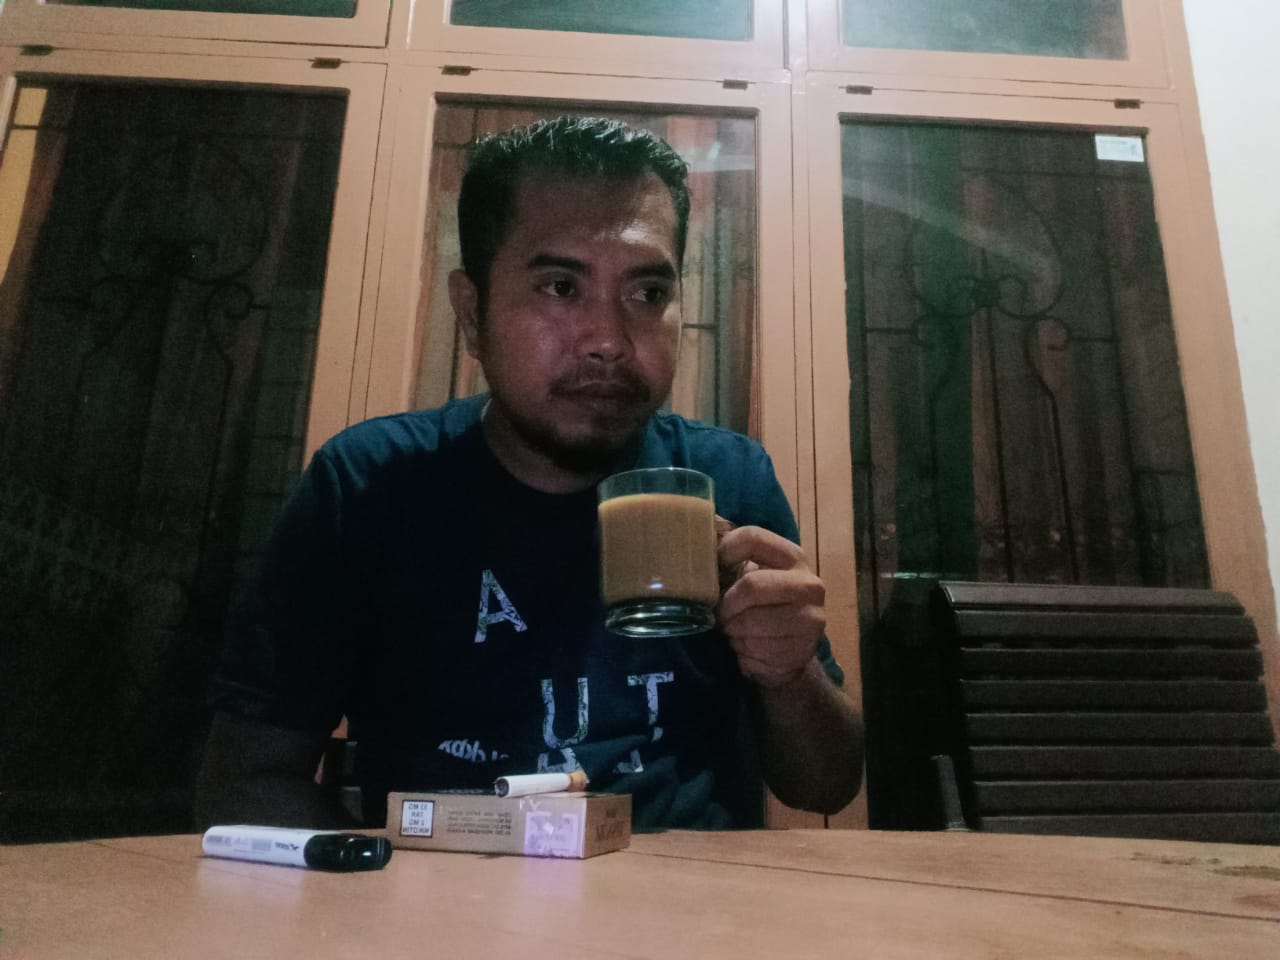 Ketua DPC JPKP Nasional Wakatobi, Meminta Kepada Kejaksaan Tinggi Provinsi Sulawesi Tenggara Agar Segera Mengambil Langkah 